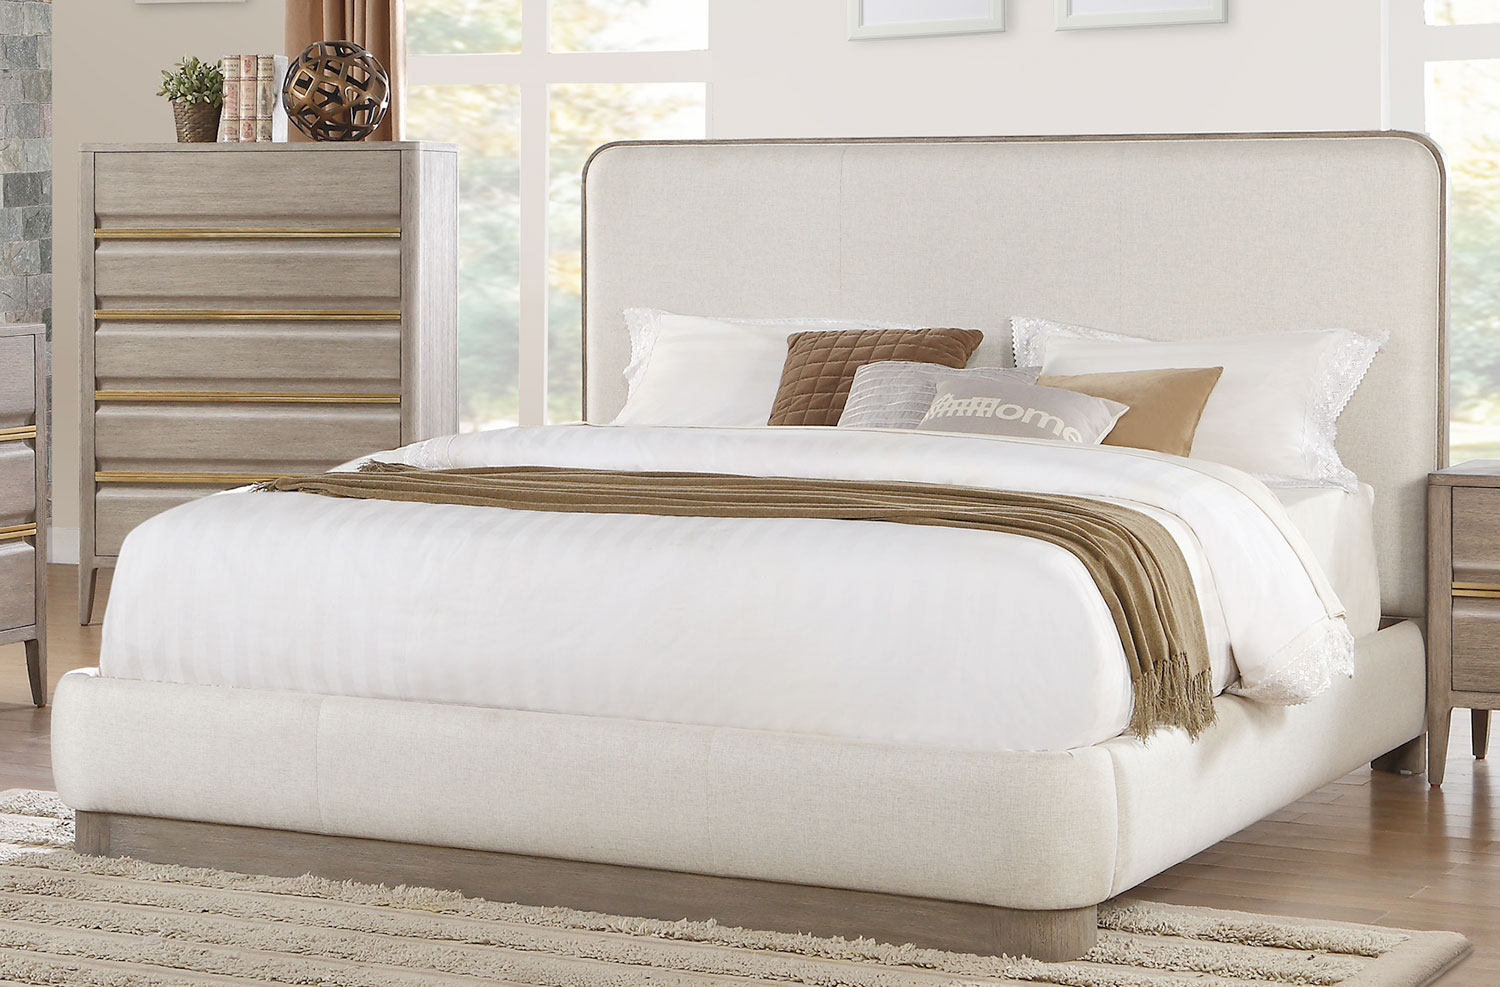 Homelegance Aristide Upholstered Platform Bed - Gold and Weathered Grey